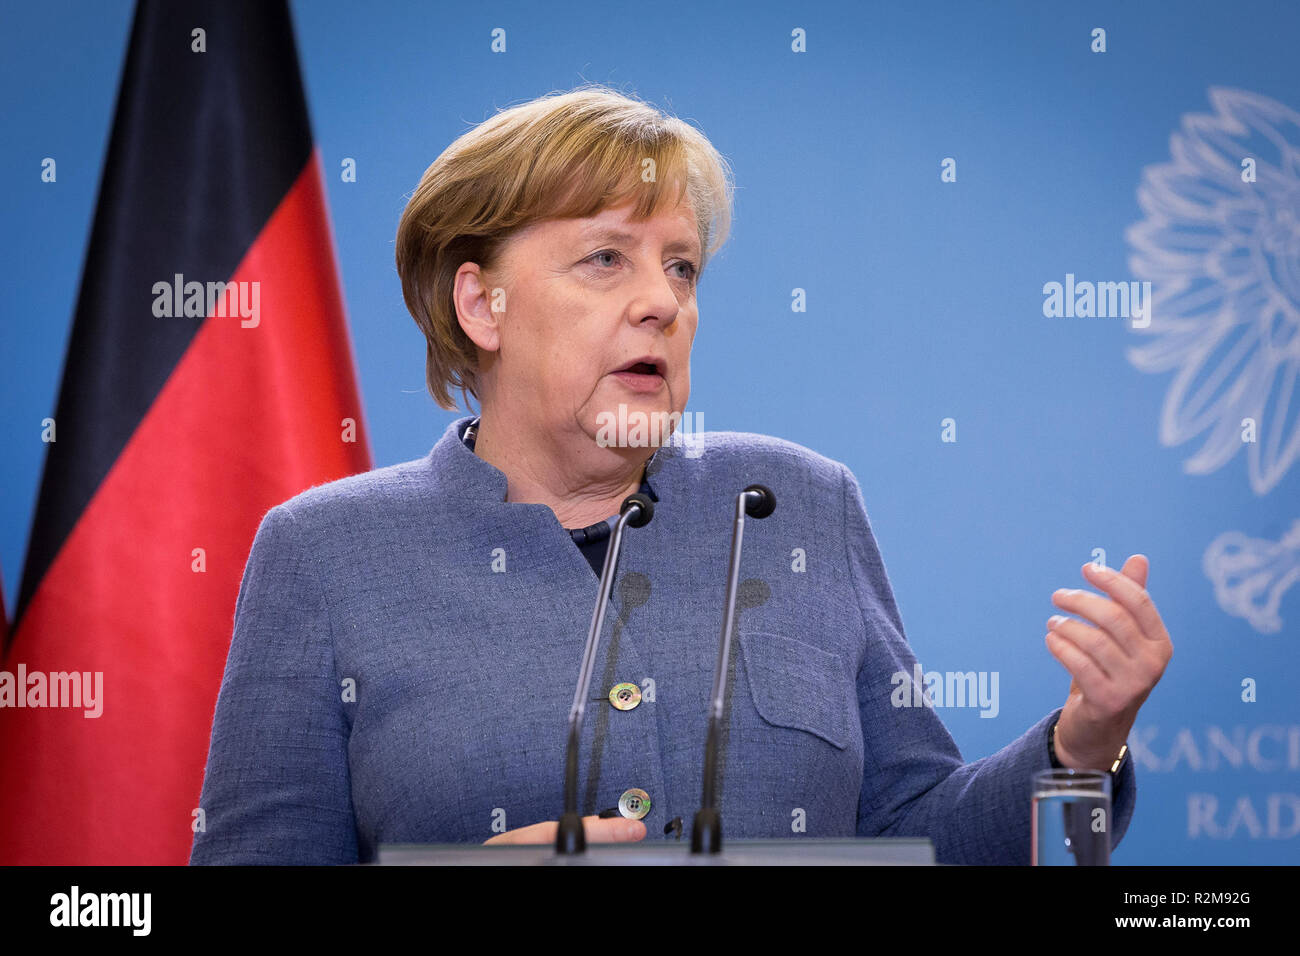 Il cancelliere tedesco Angela Merkel a partecipare ad una conferenza stampa con il Primo Ministro polacco Mateusz Morawiecki dopo la riunione presso la cancelleria del Primo Ministro a Varsavia in Polonia il 19 marzo 2018 Foto Stock